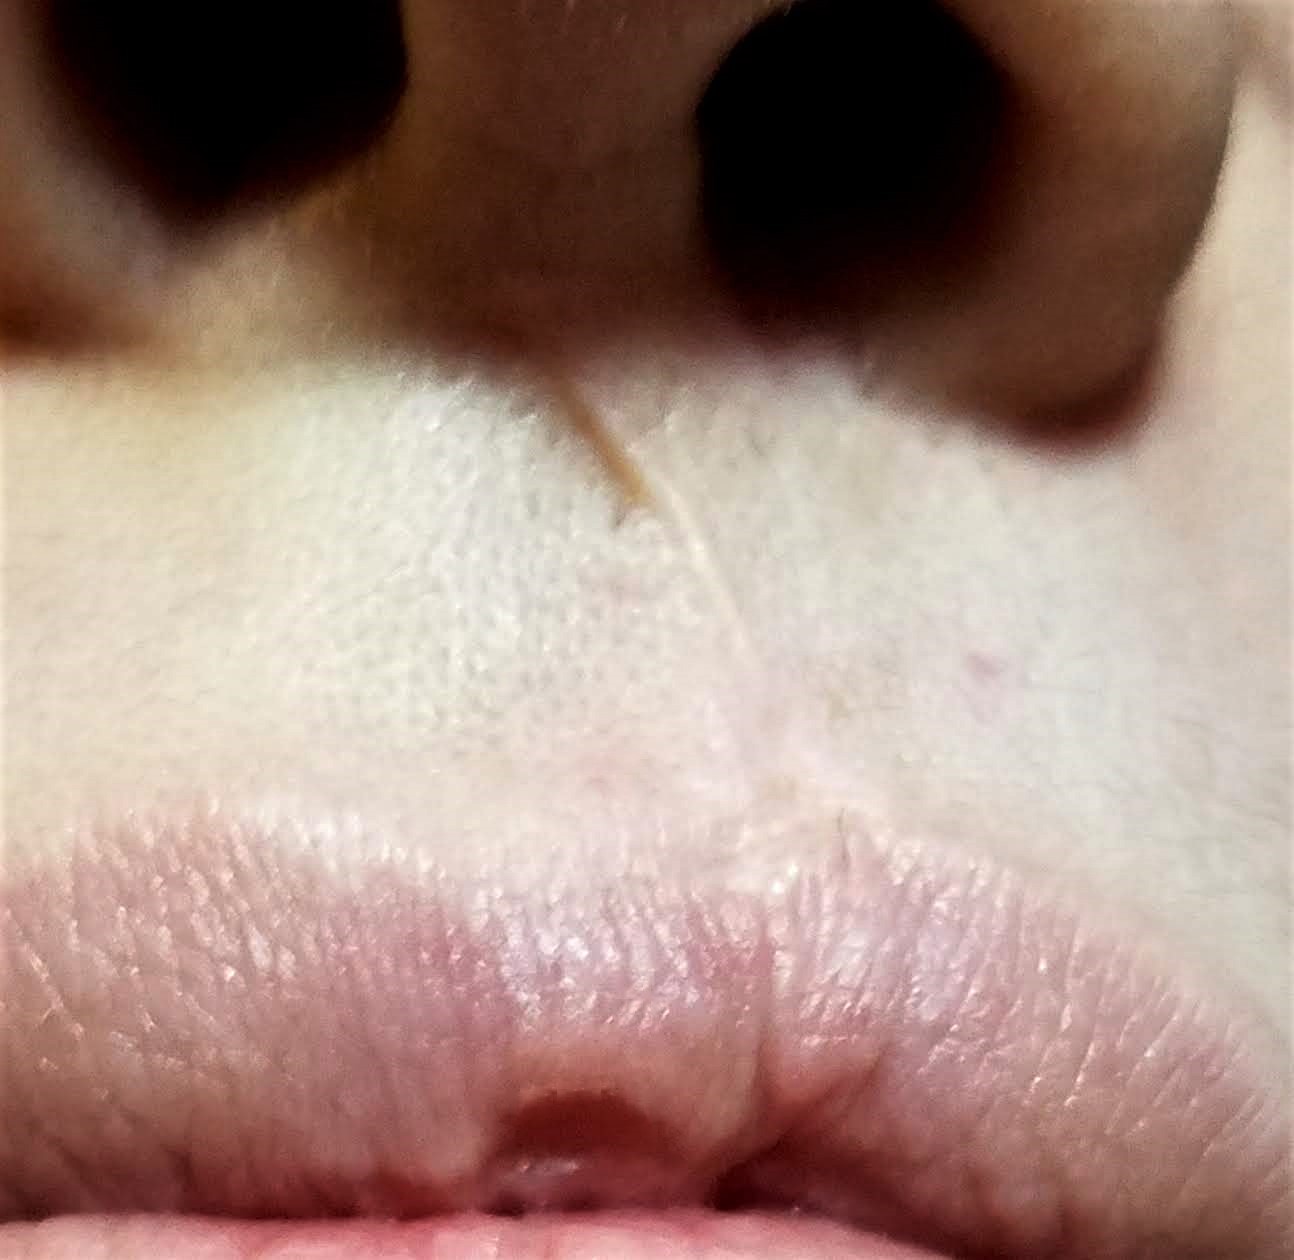 cleft lip scar